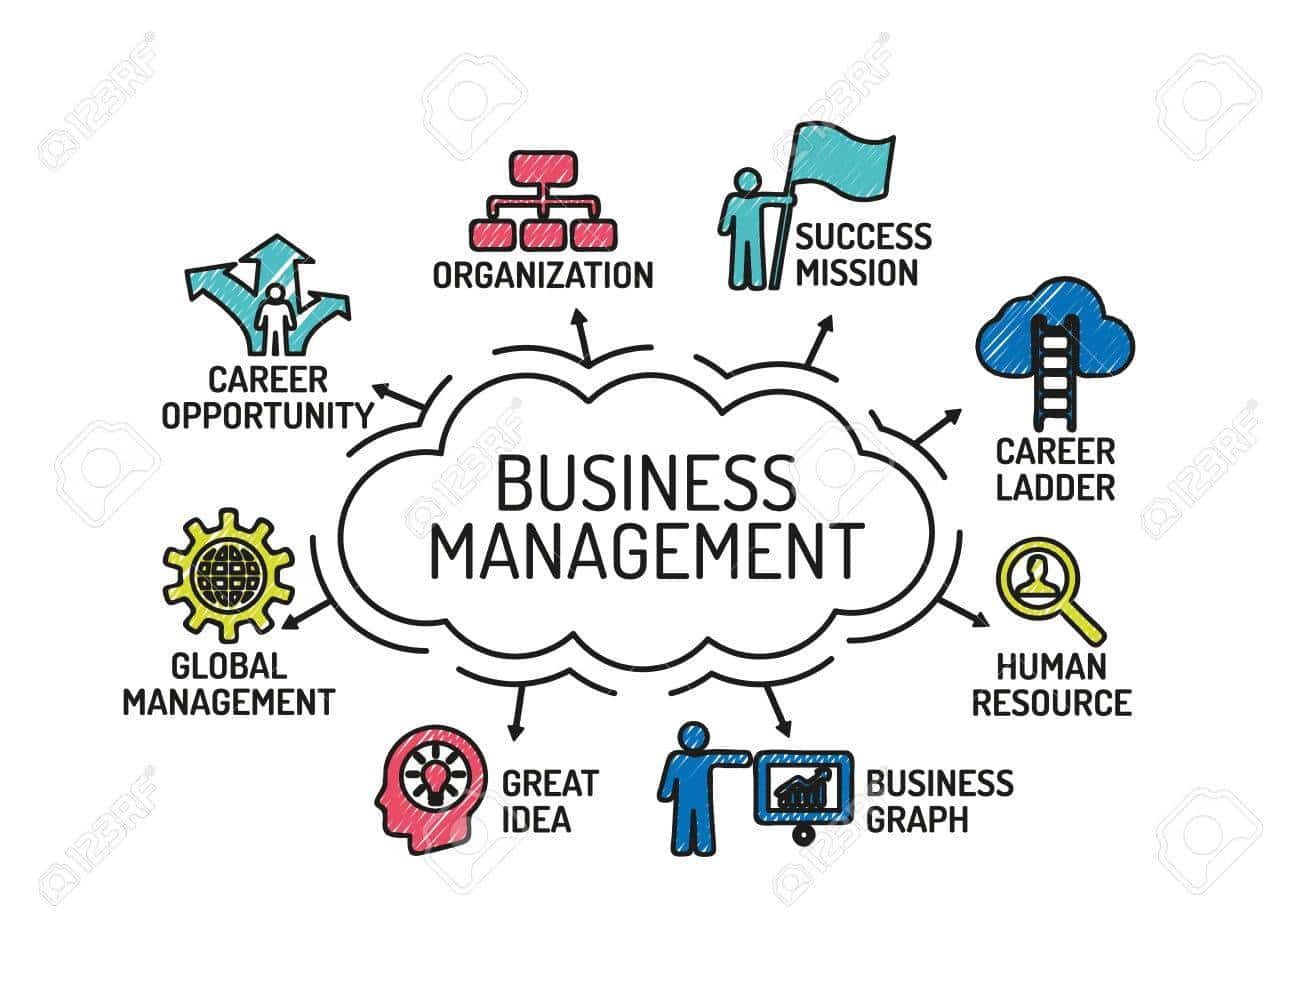 إدارة الأعمال - كل ما تريد معرفته عن تخصص إدارة الأعمال